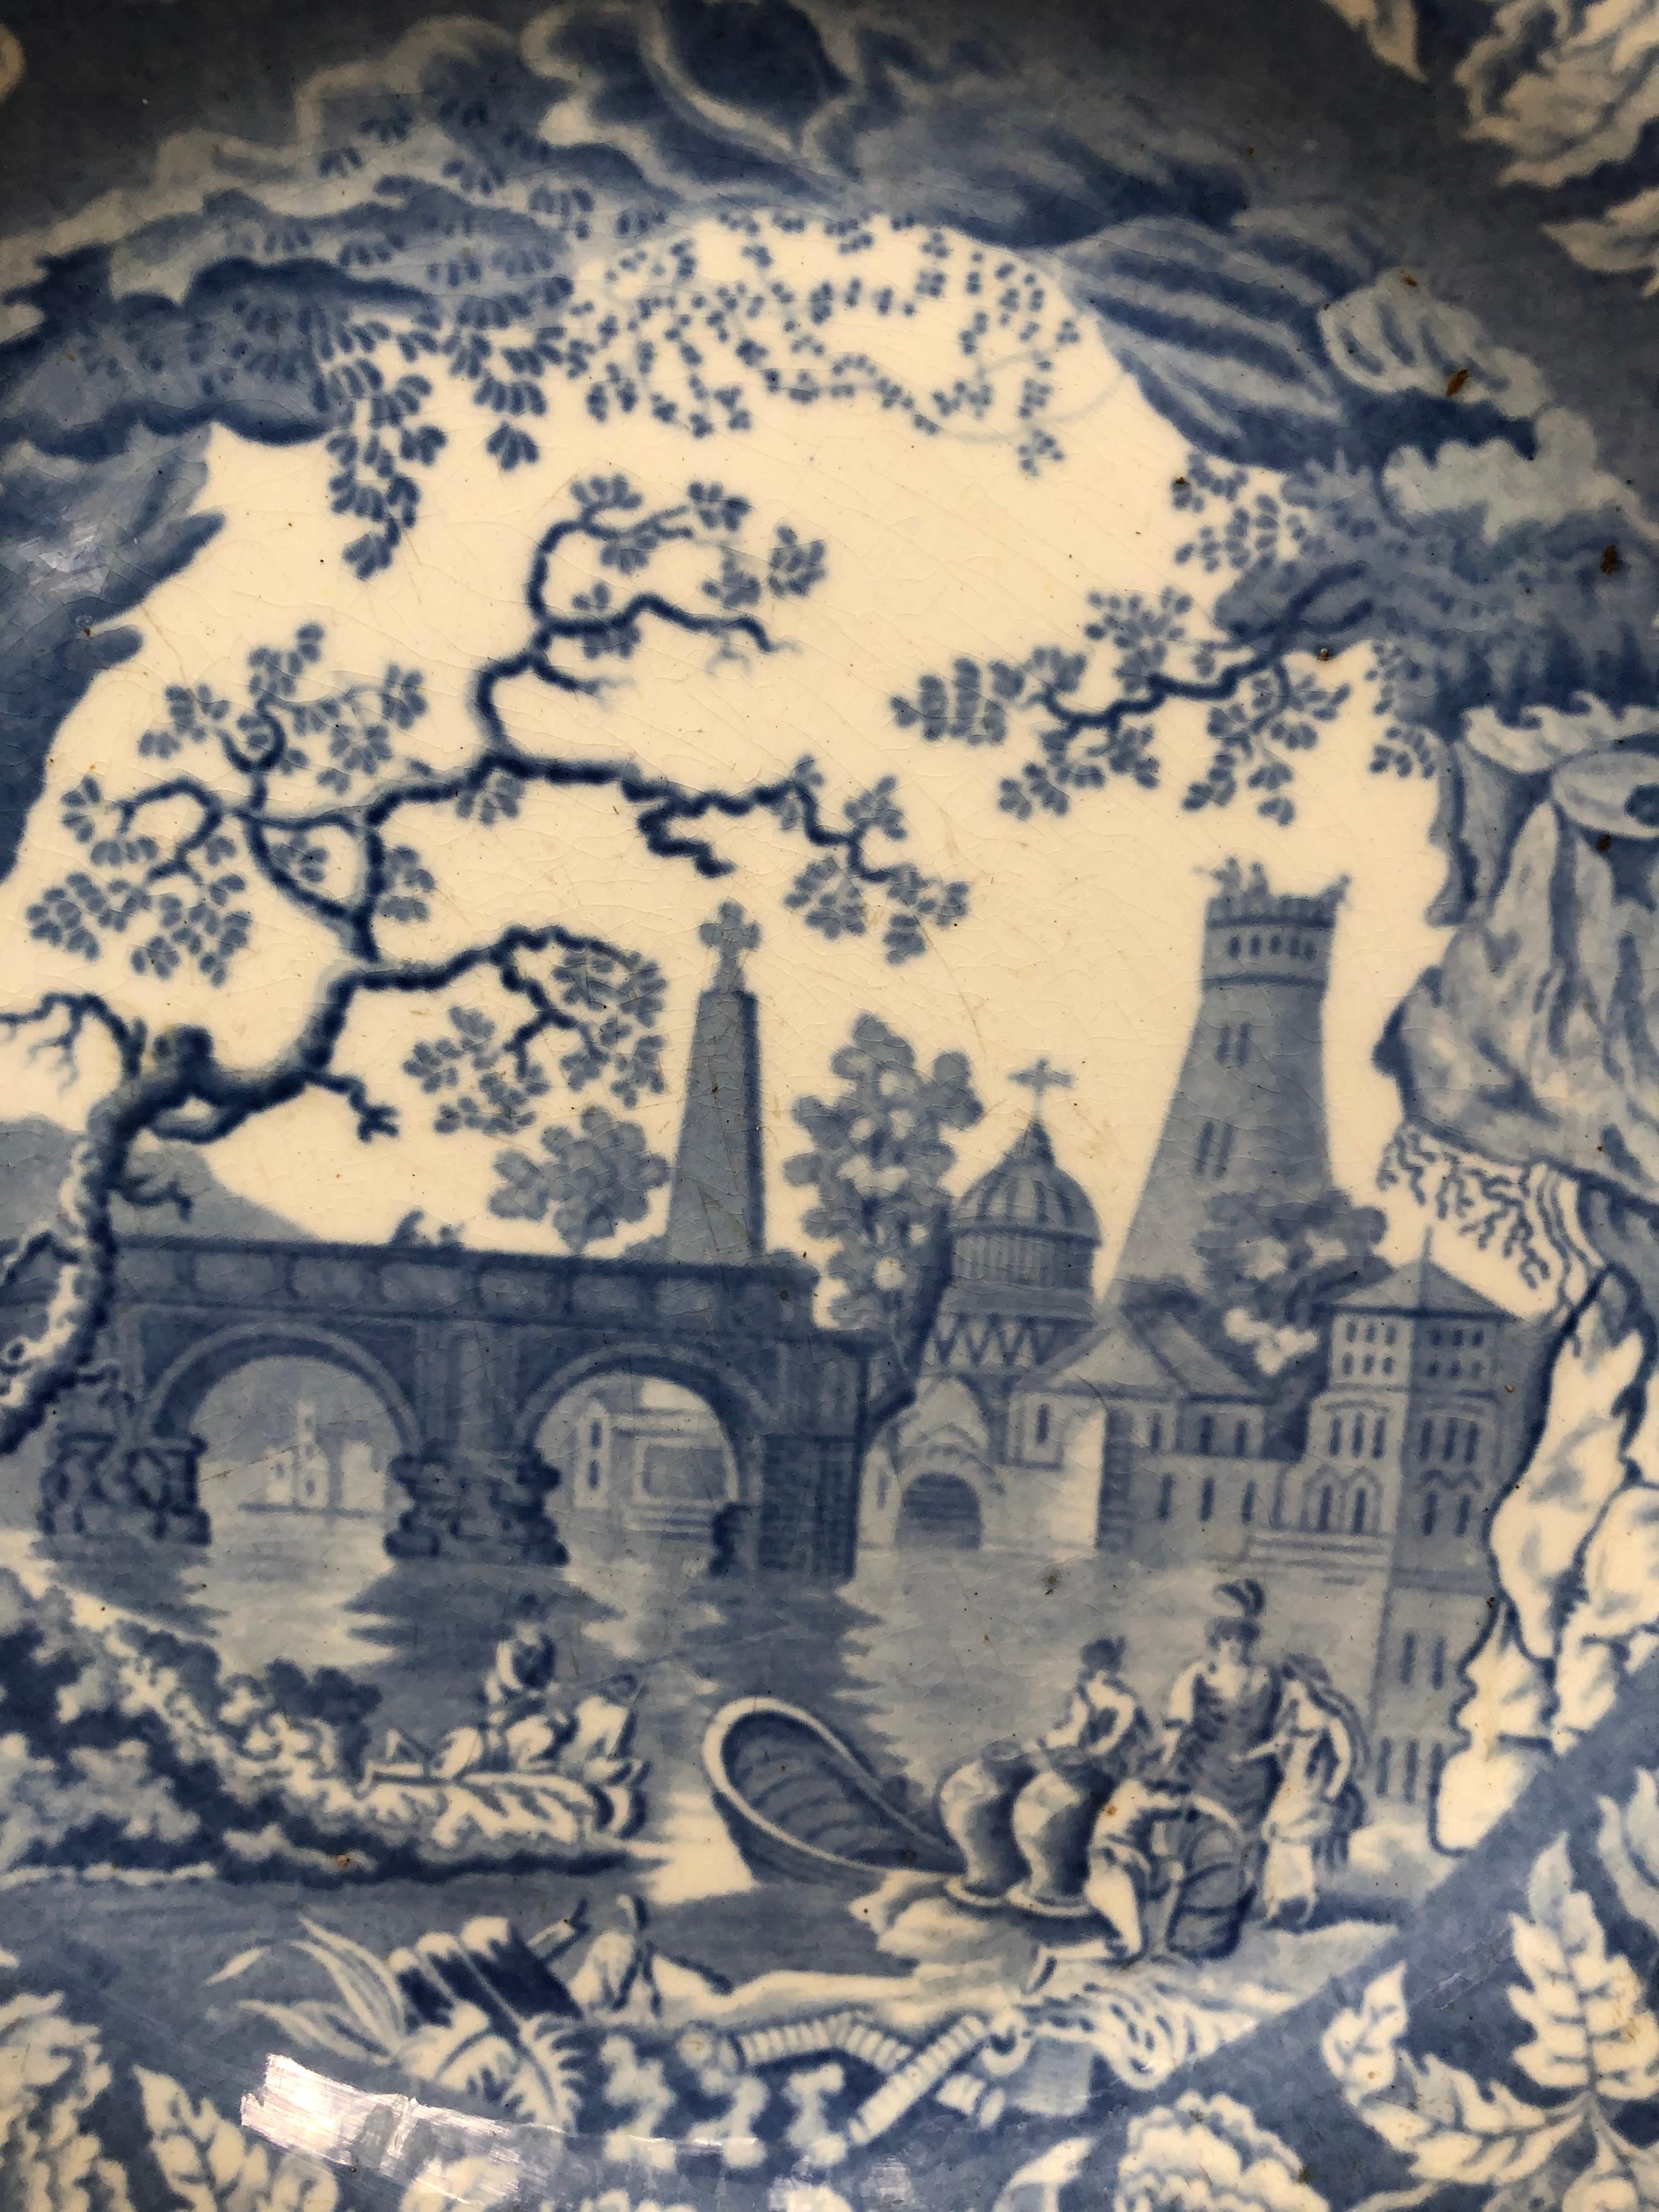 Assiette en porcelaine à transfert bleu et blanc du début du 19e siècle représentant un château, un pont avec une bordure de fleurs, signée Whiting Staffordshire. Marque 1818-1834.
9,5 pouces de diamètre.
 